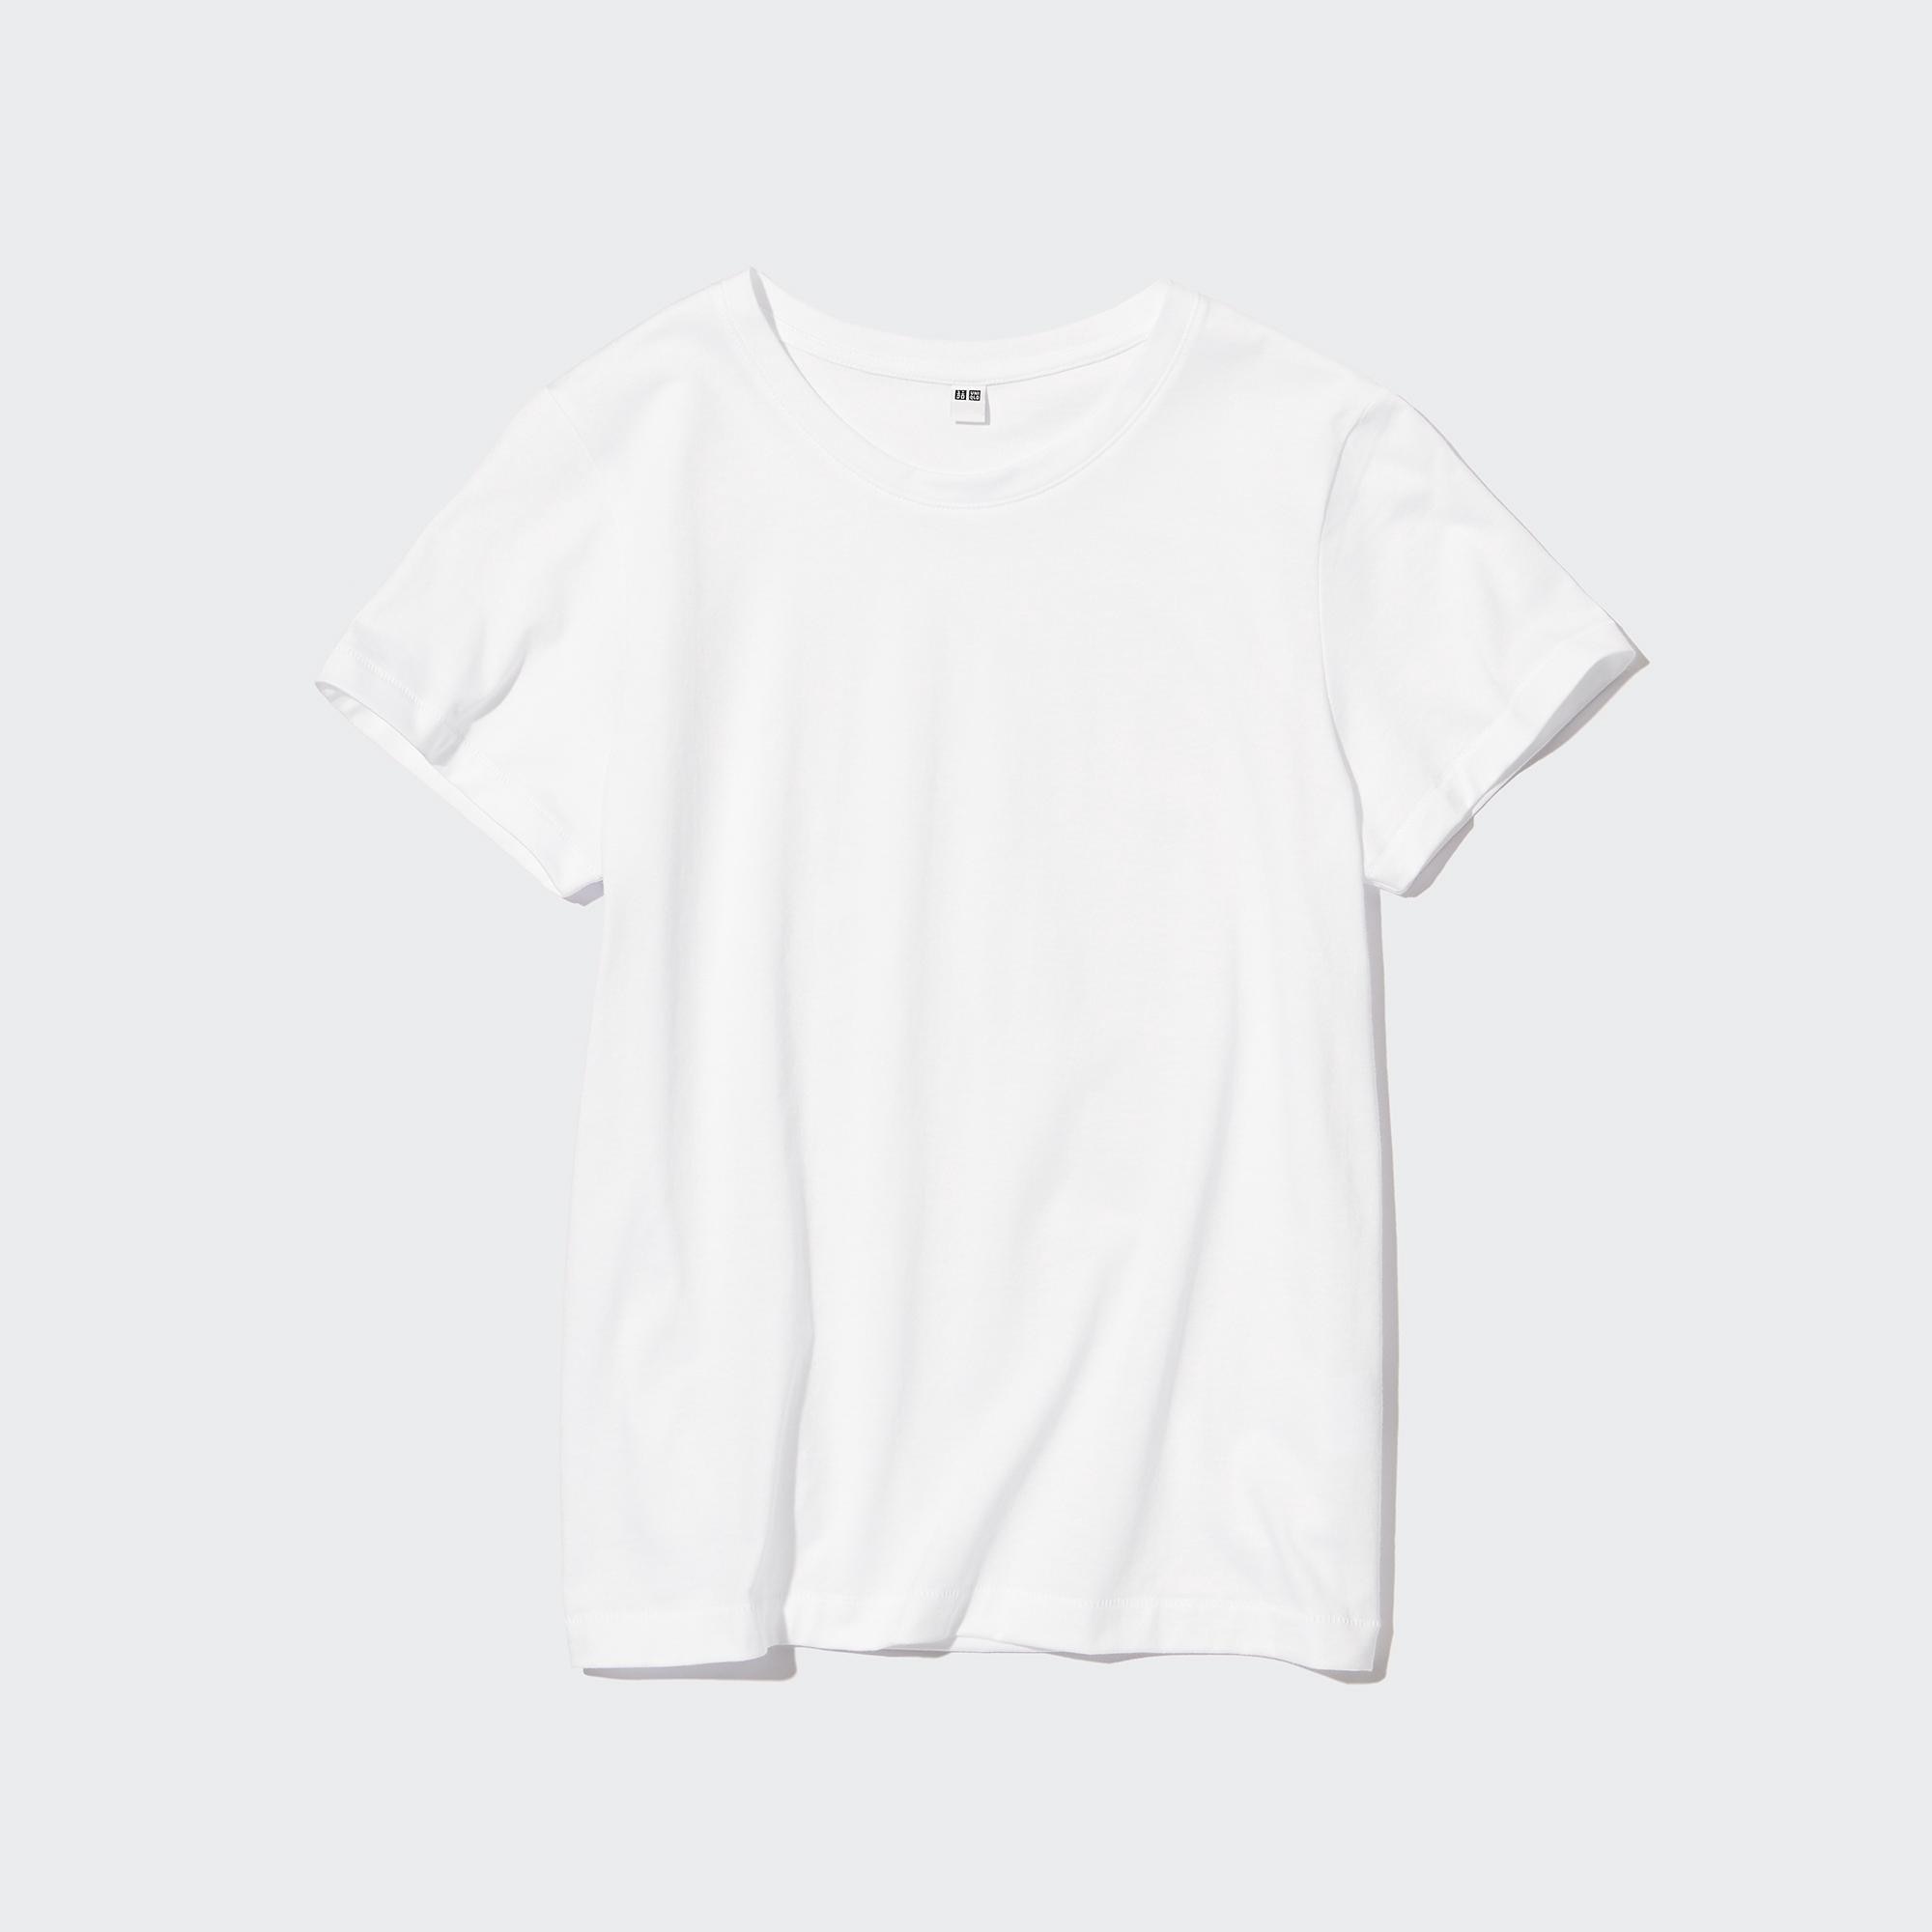 Chia sẻ 81+ về uniqlo white t shirt hay nhất